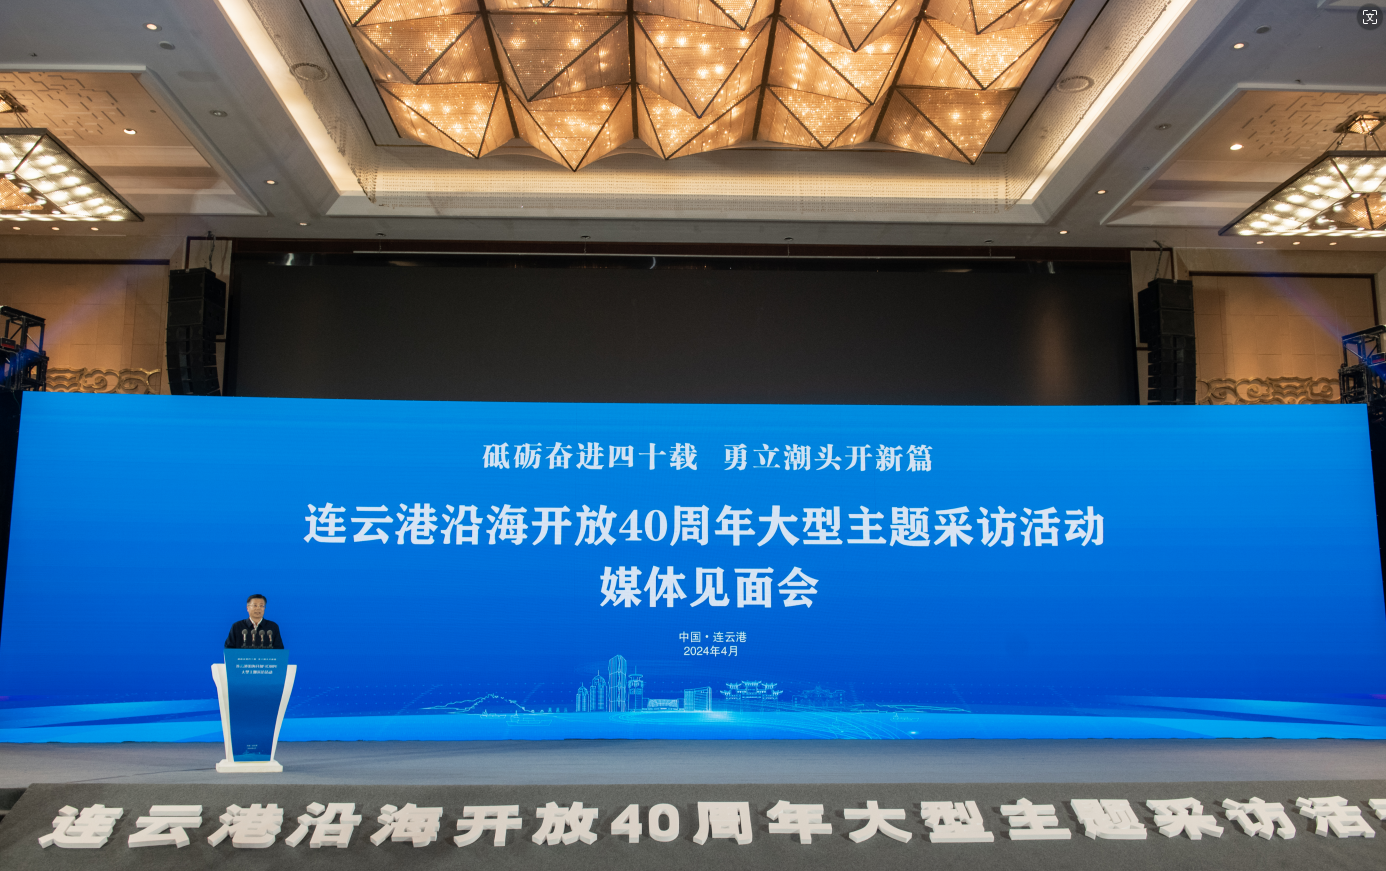 连云港沿海开放40周年大型主题采访活动媒体见面会举行